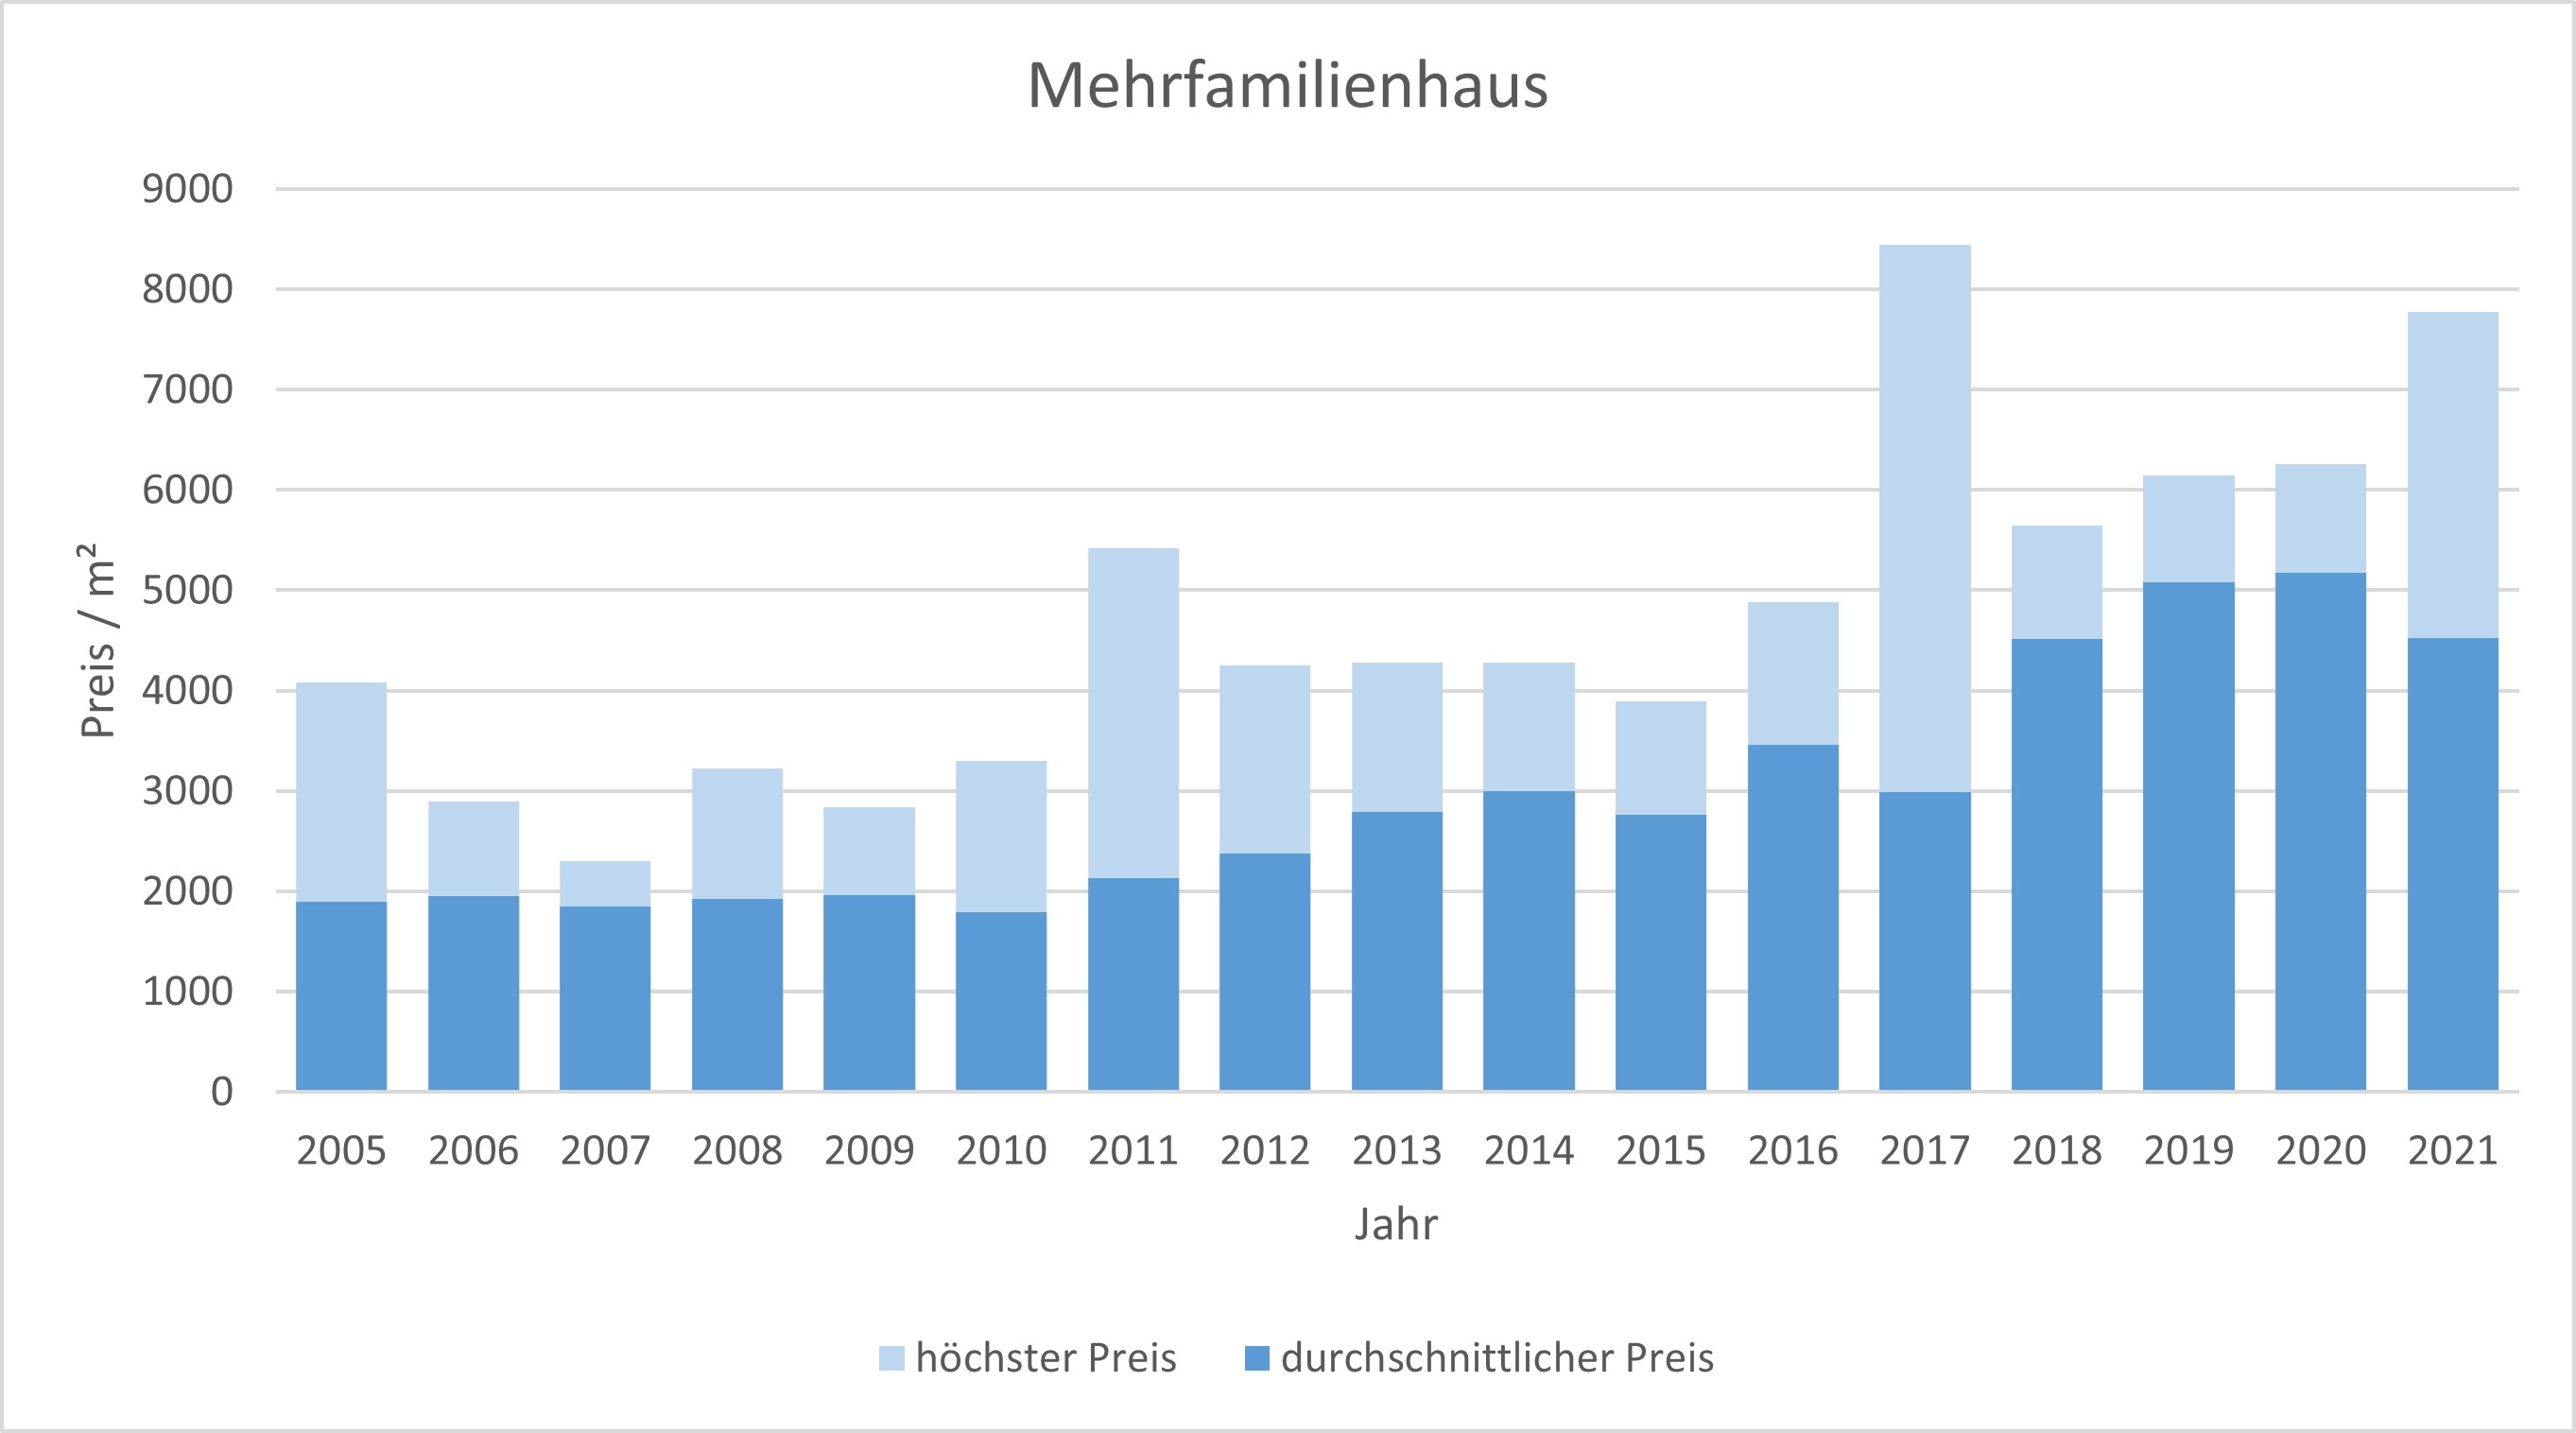 Bad Aibling Makler Mehrfamilienhaus Kaufen Verkaufen Preis Bewertung 2019, 2020, 2021